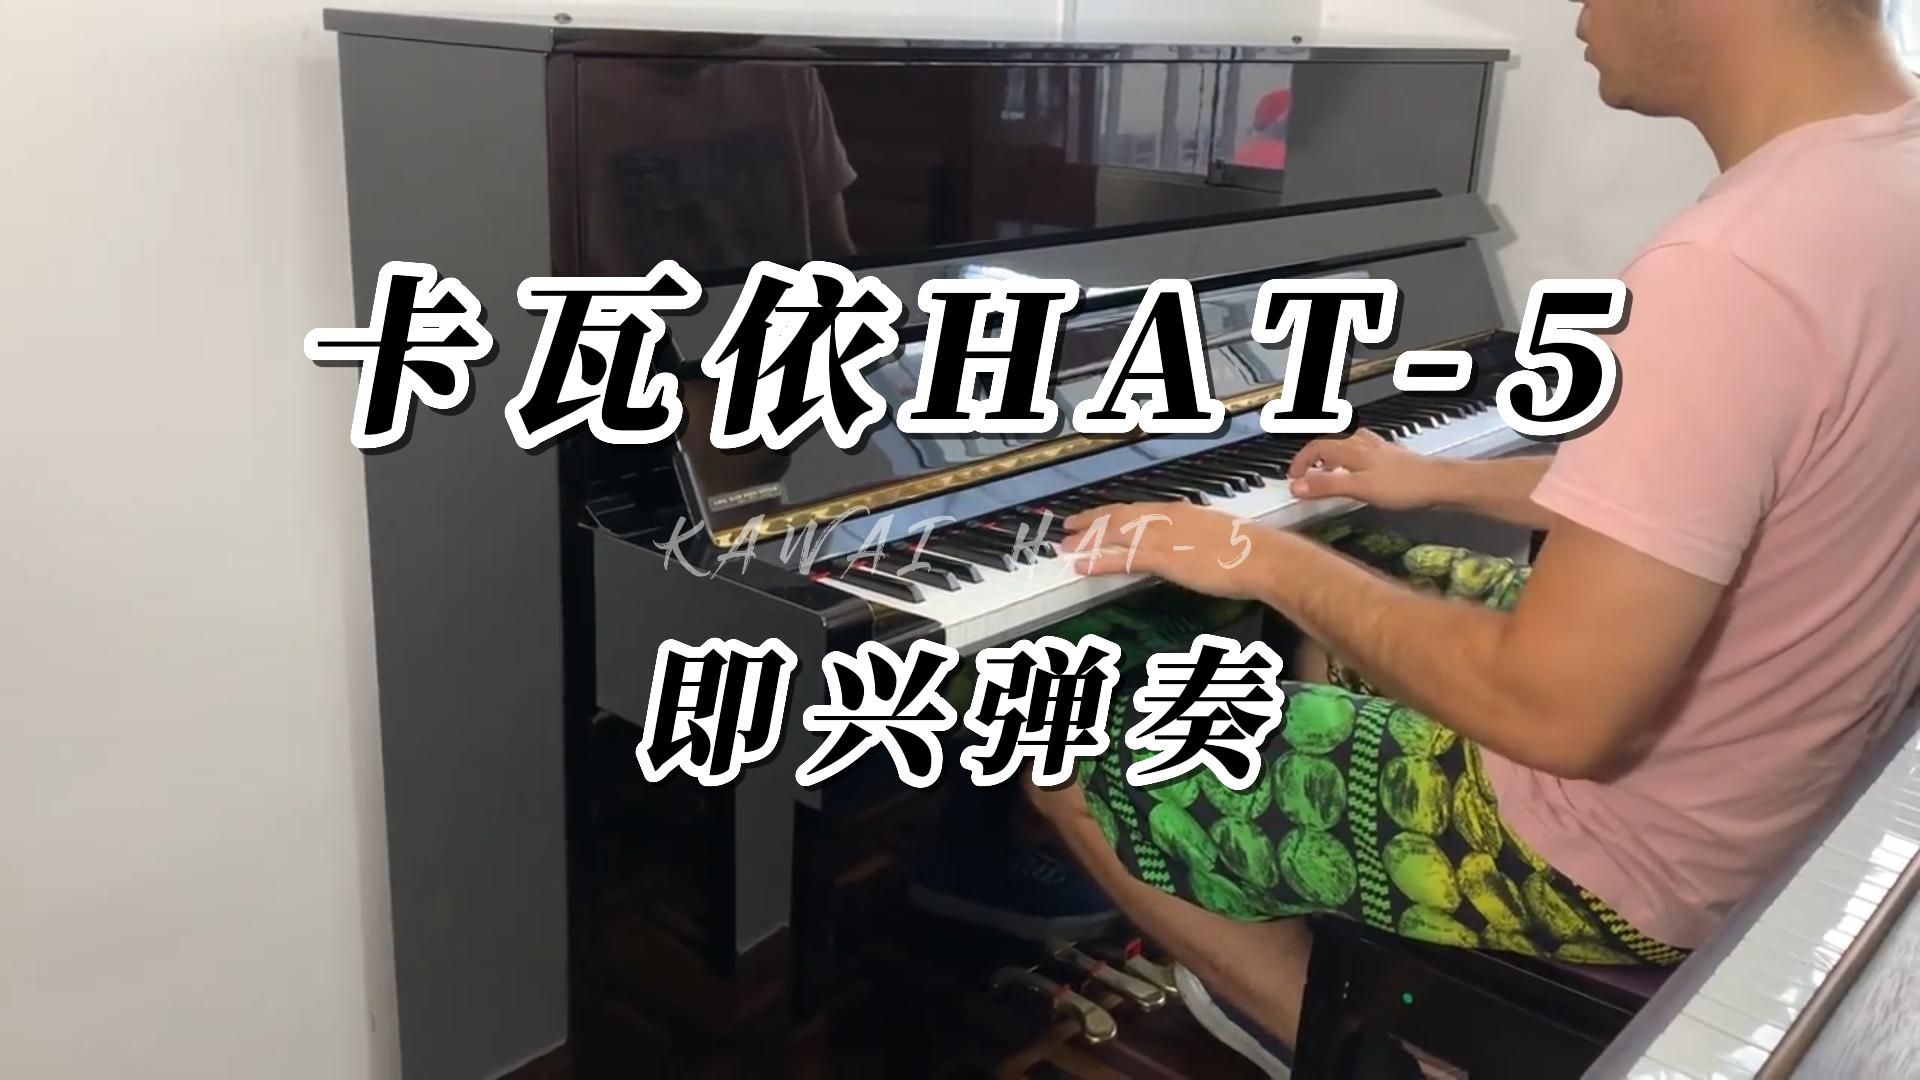 KAWAI 卡瓦依HAT-5立式钢琴即兴弹奏-柏通琴行整理